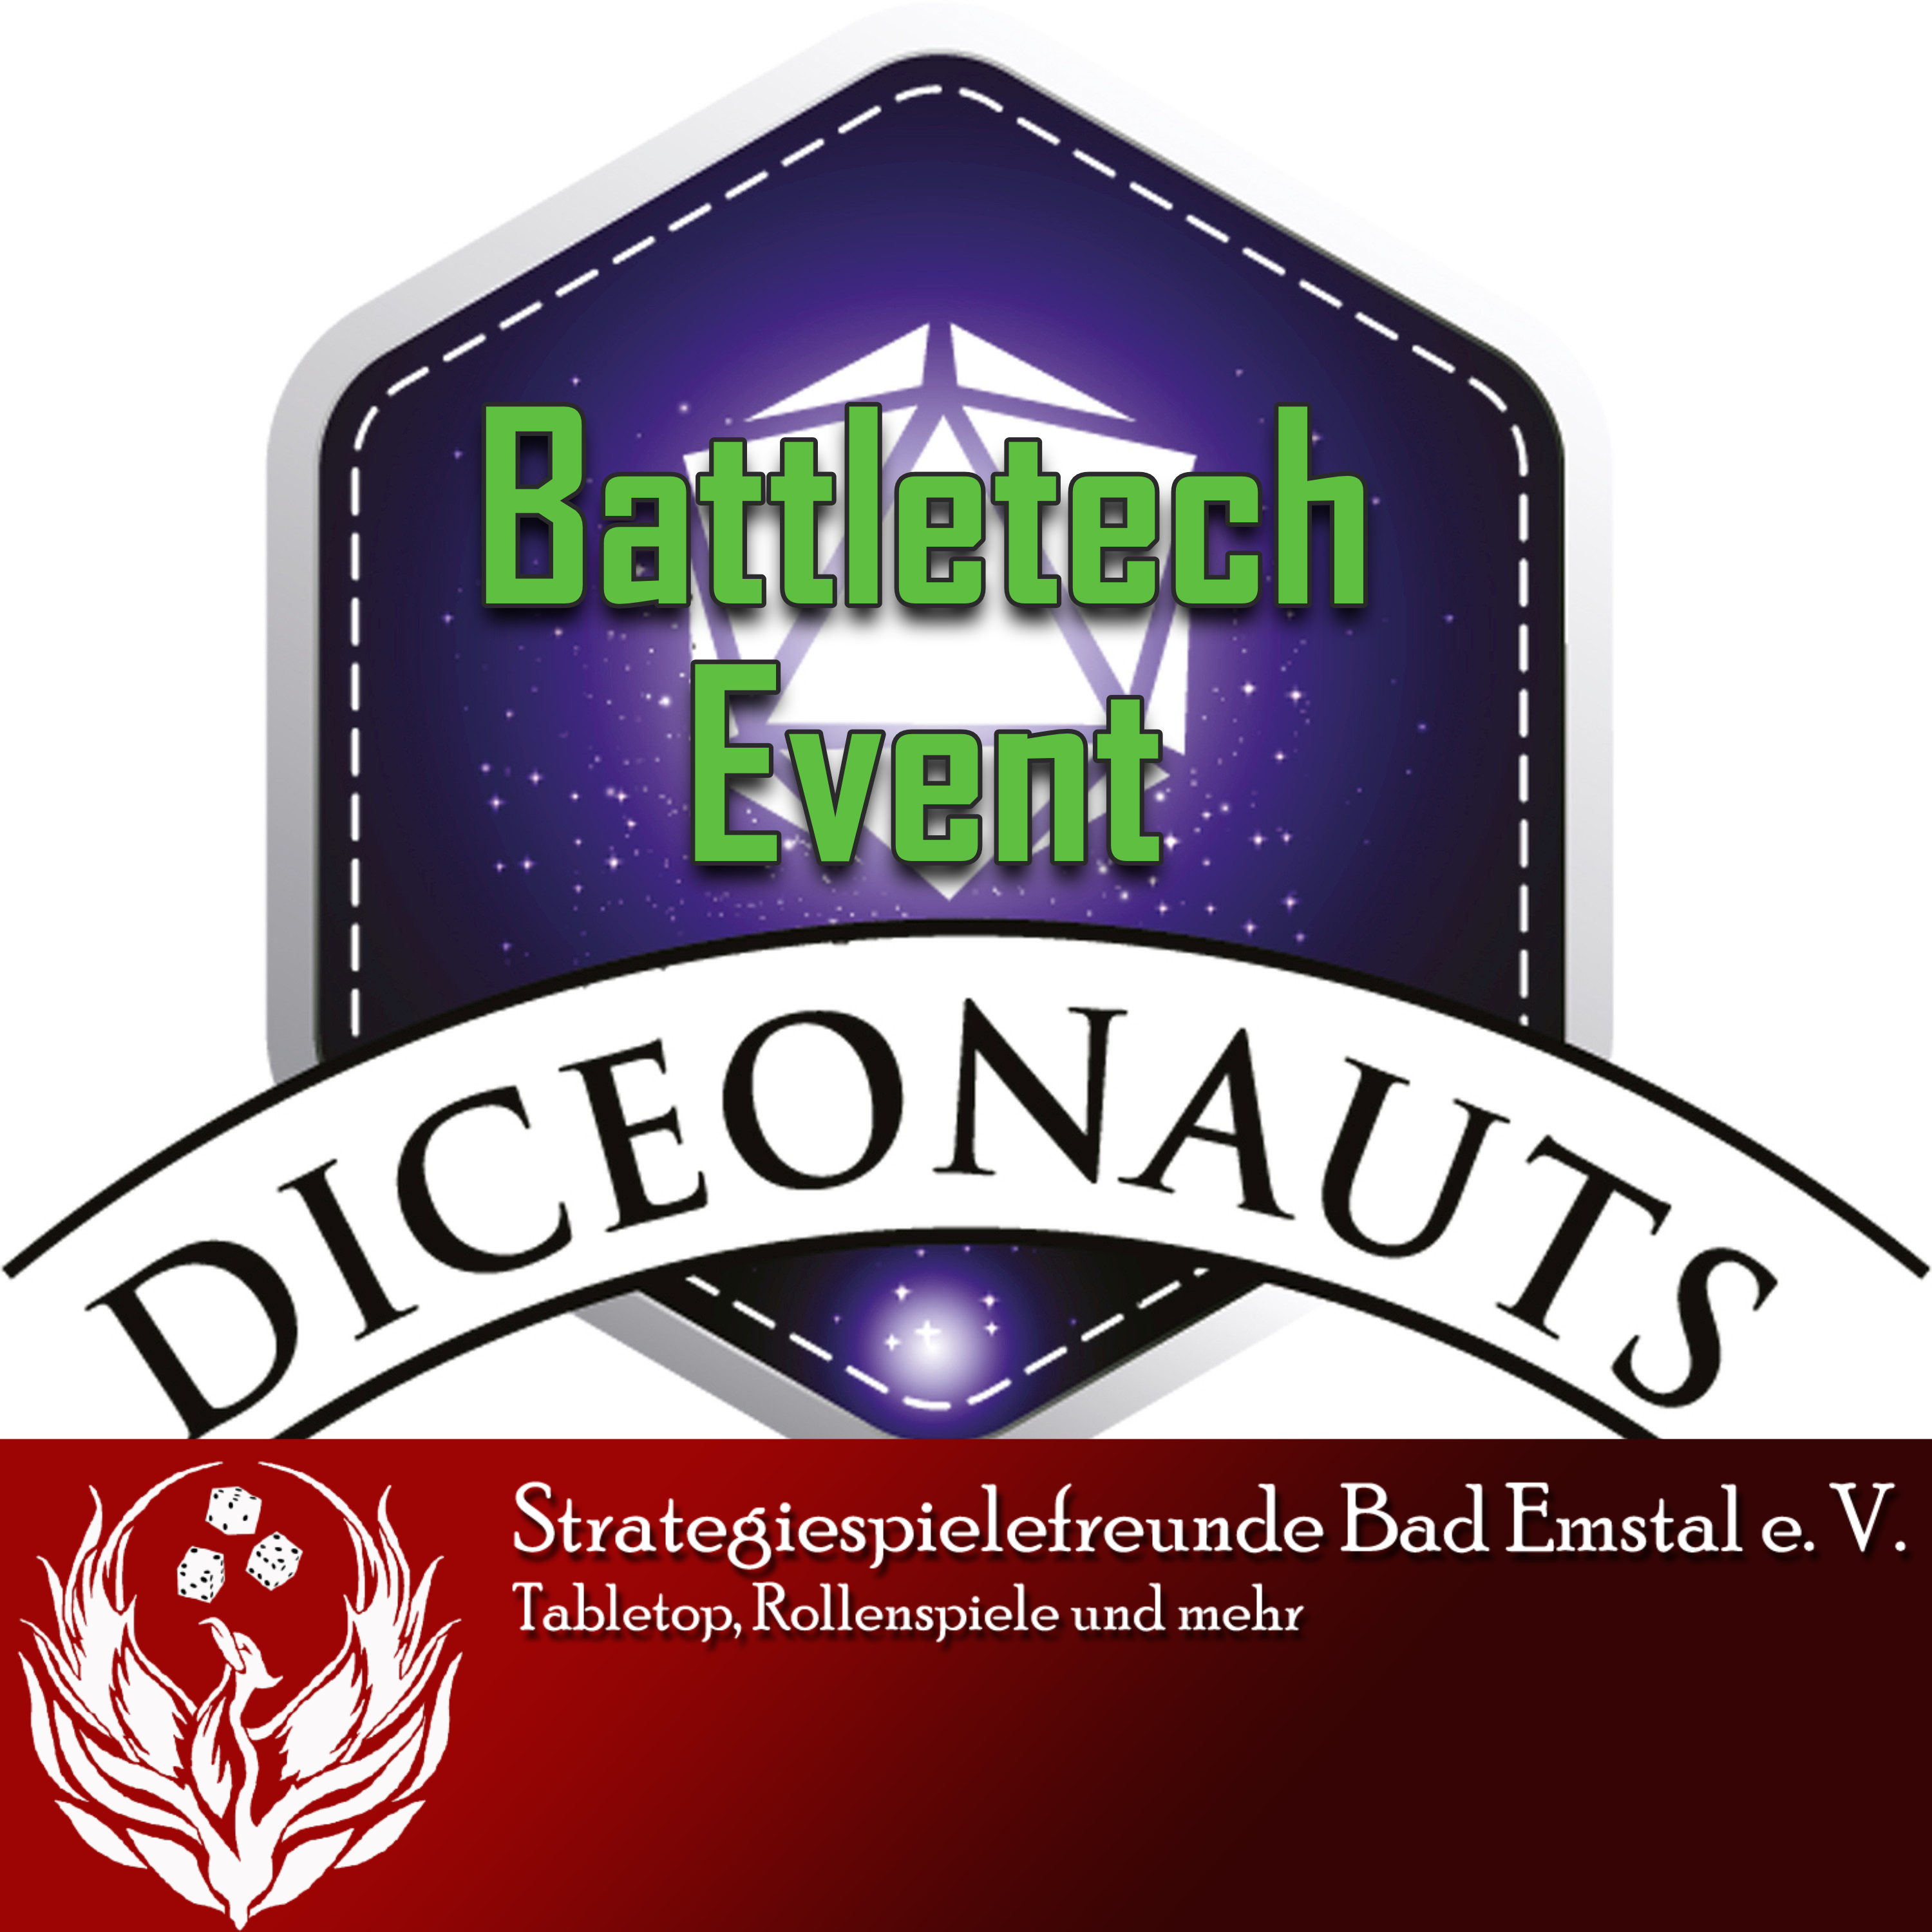 Battletech Event der Strategiespielefreunde post thumbnail image